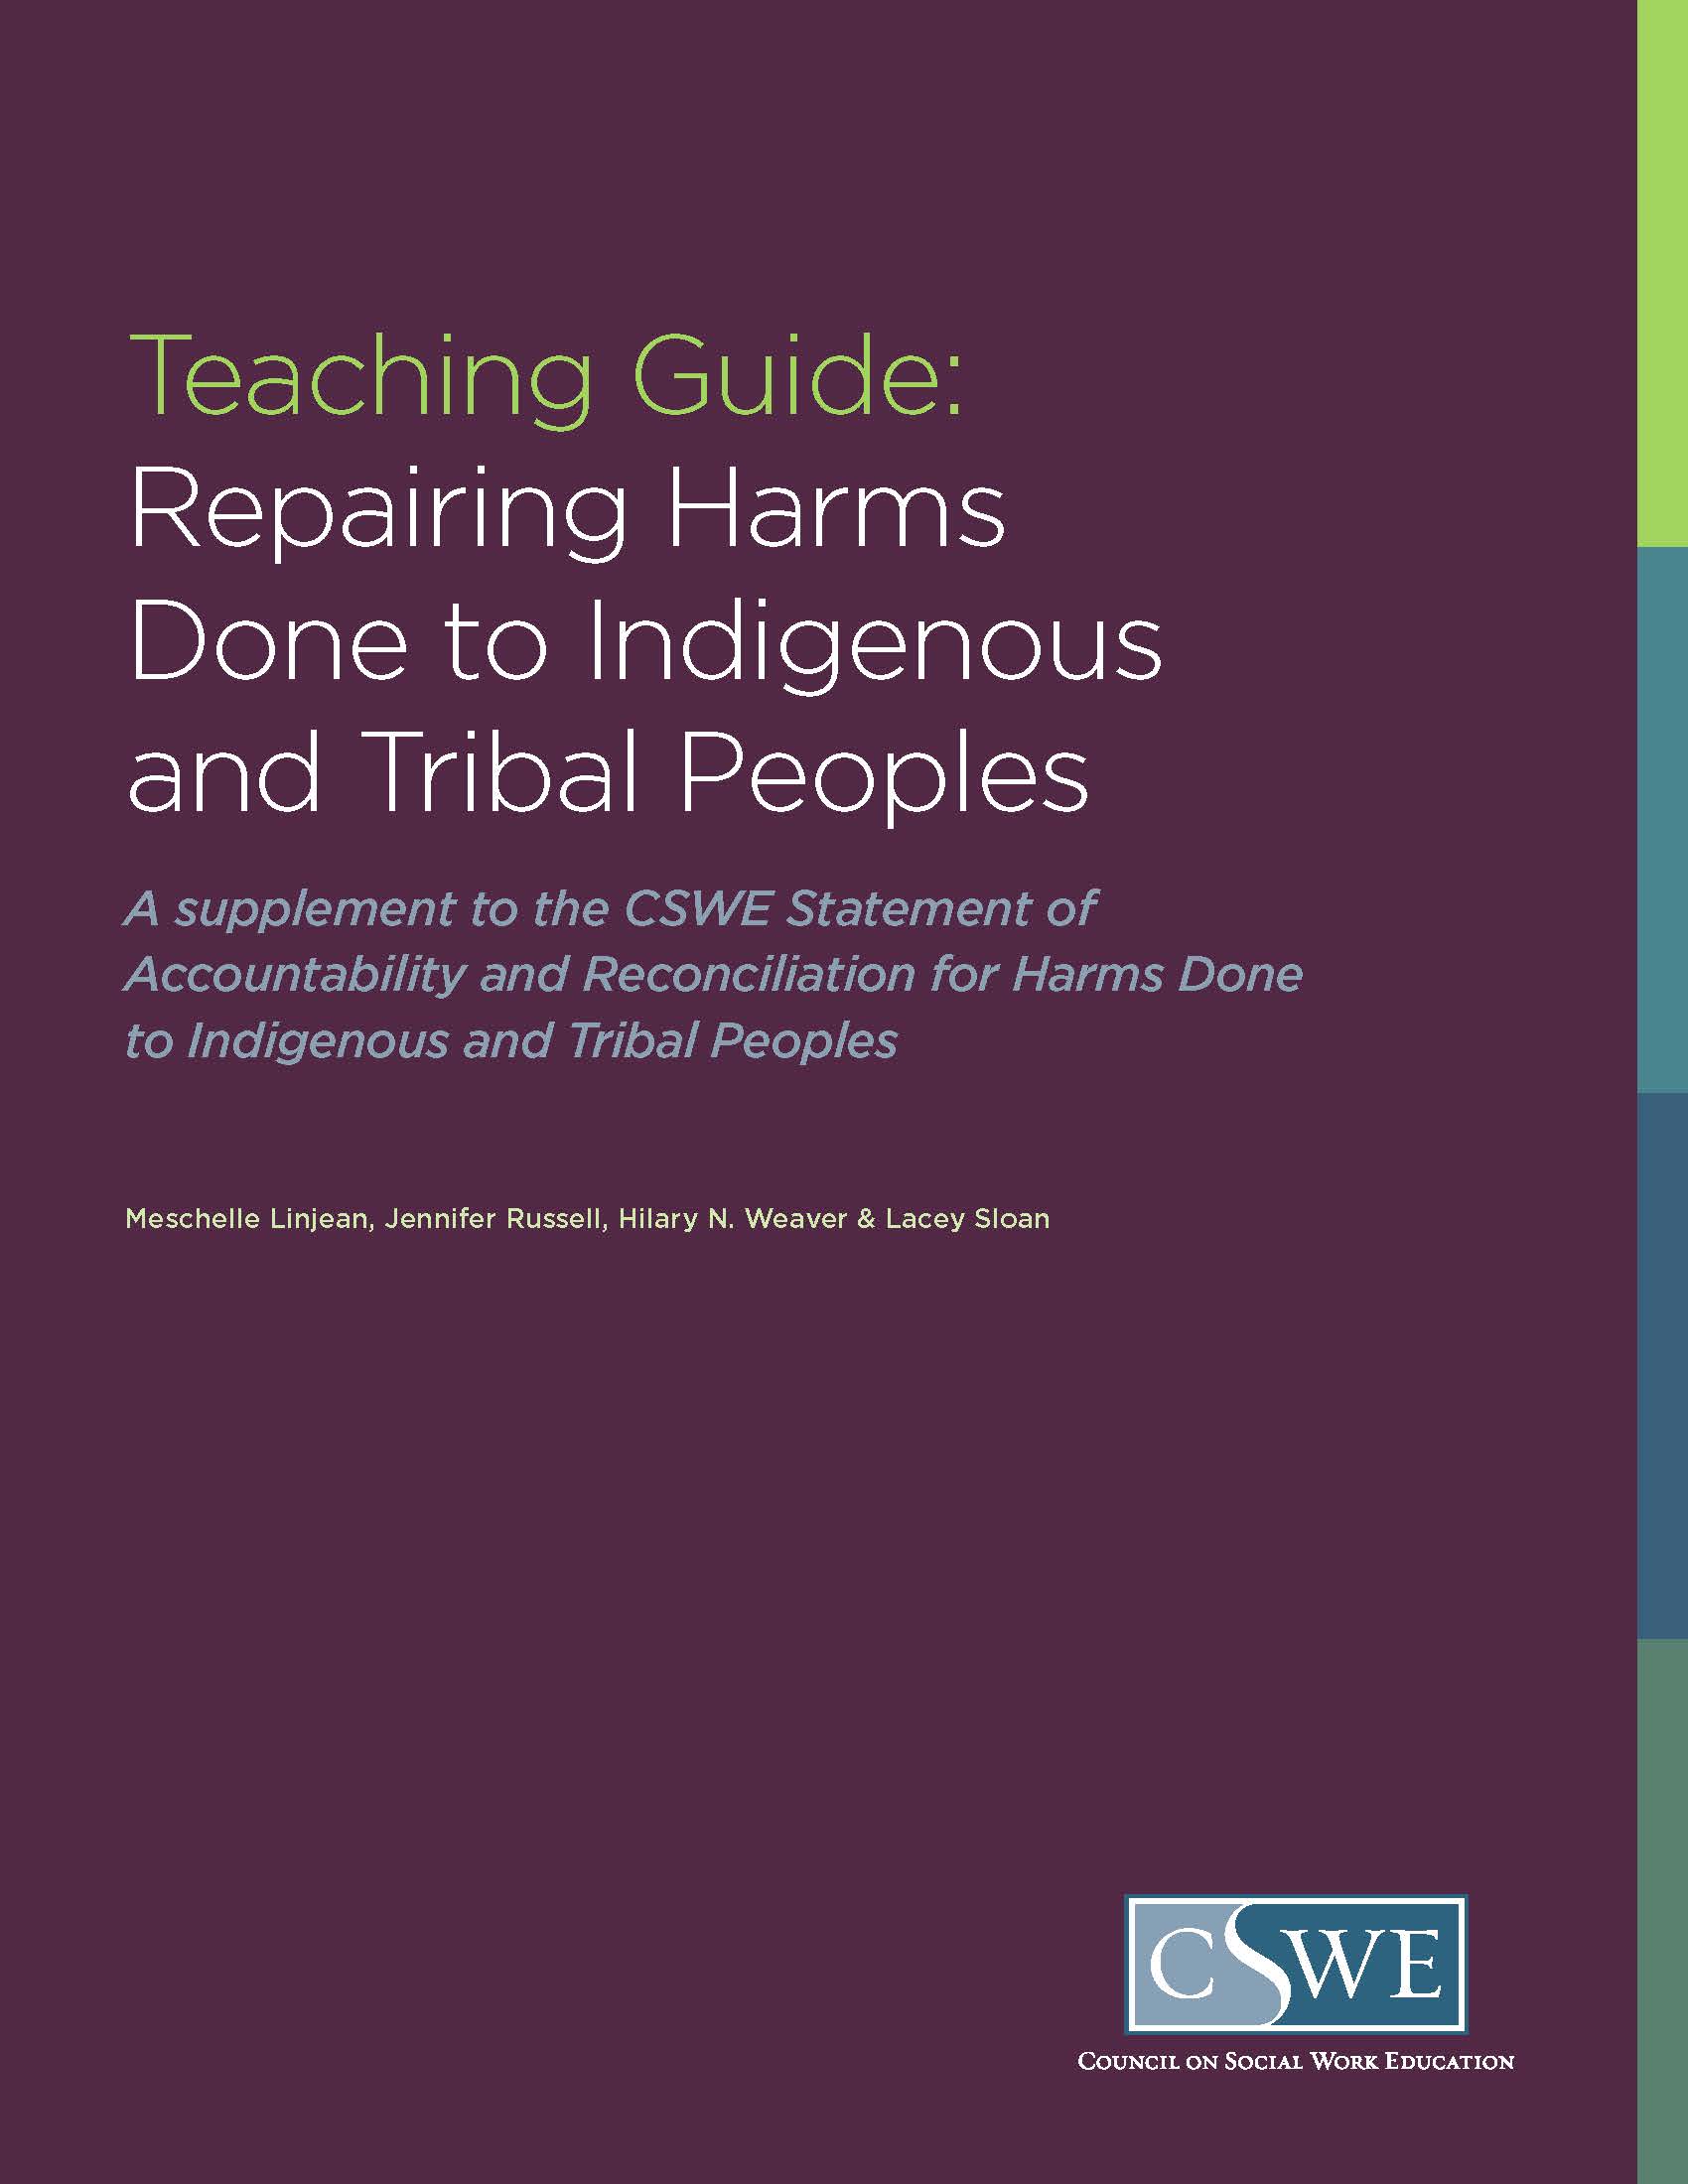 TeachingGuide_Repairing-Harms-Done-to-Indigenous-Tribal-Peoples.jpg